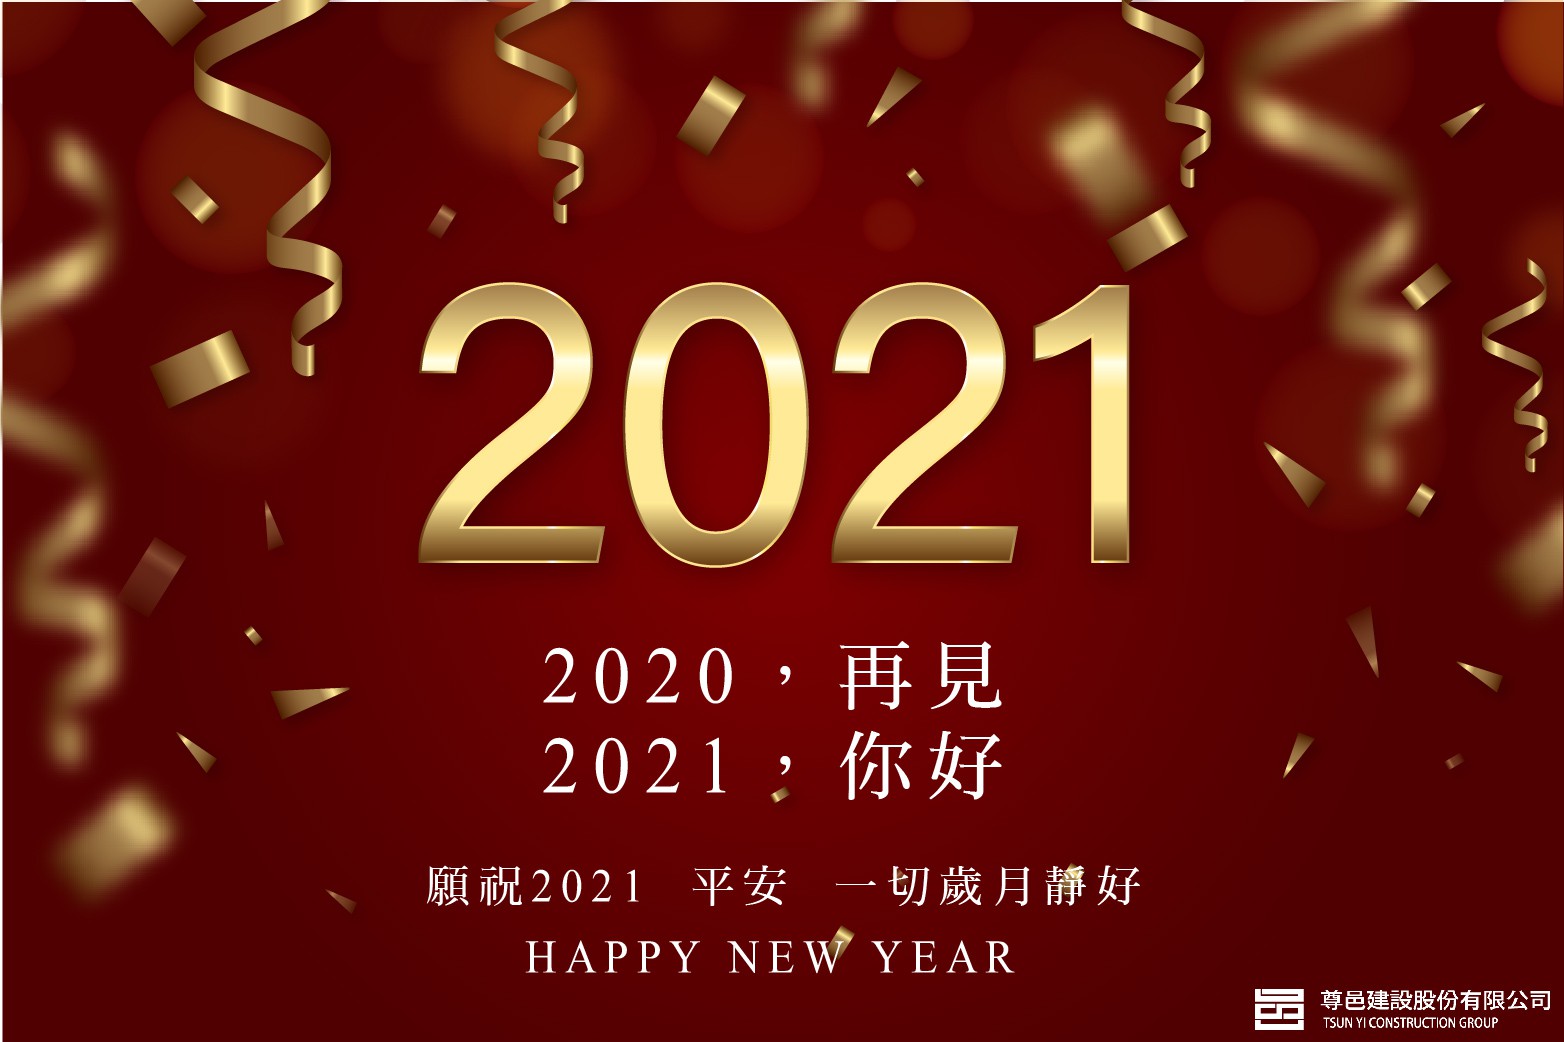 尊邑建設祝福大家，2021新年快樂! 願祝2021 平安，一切歲月靜好。